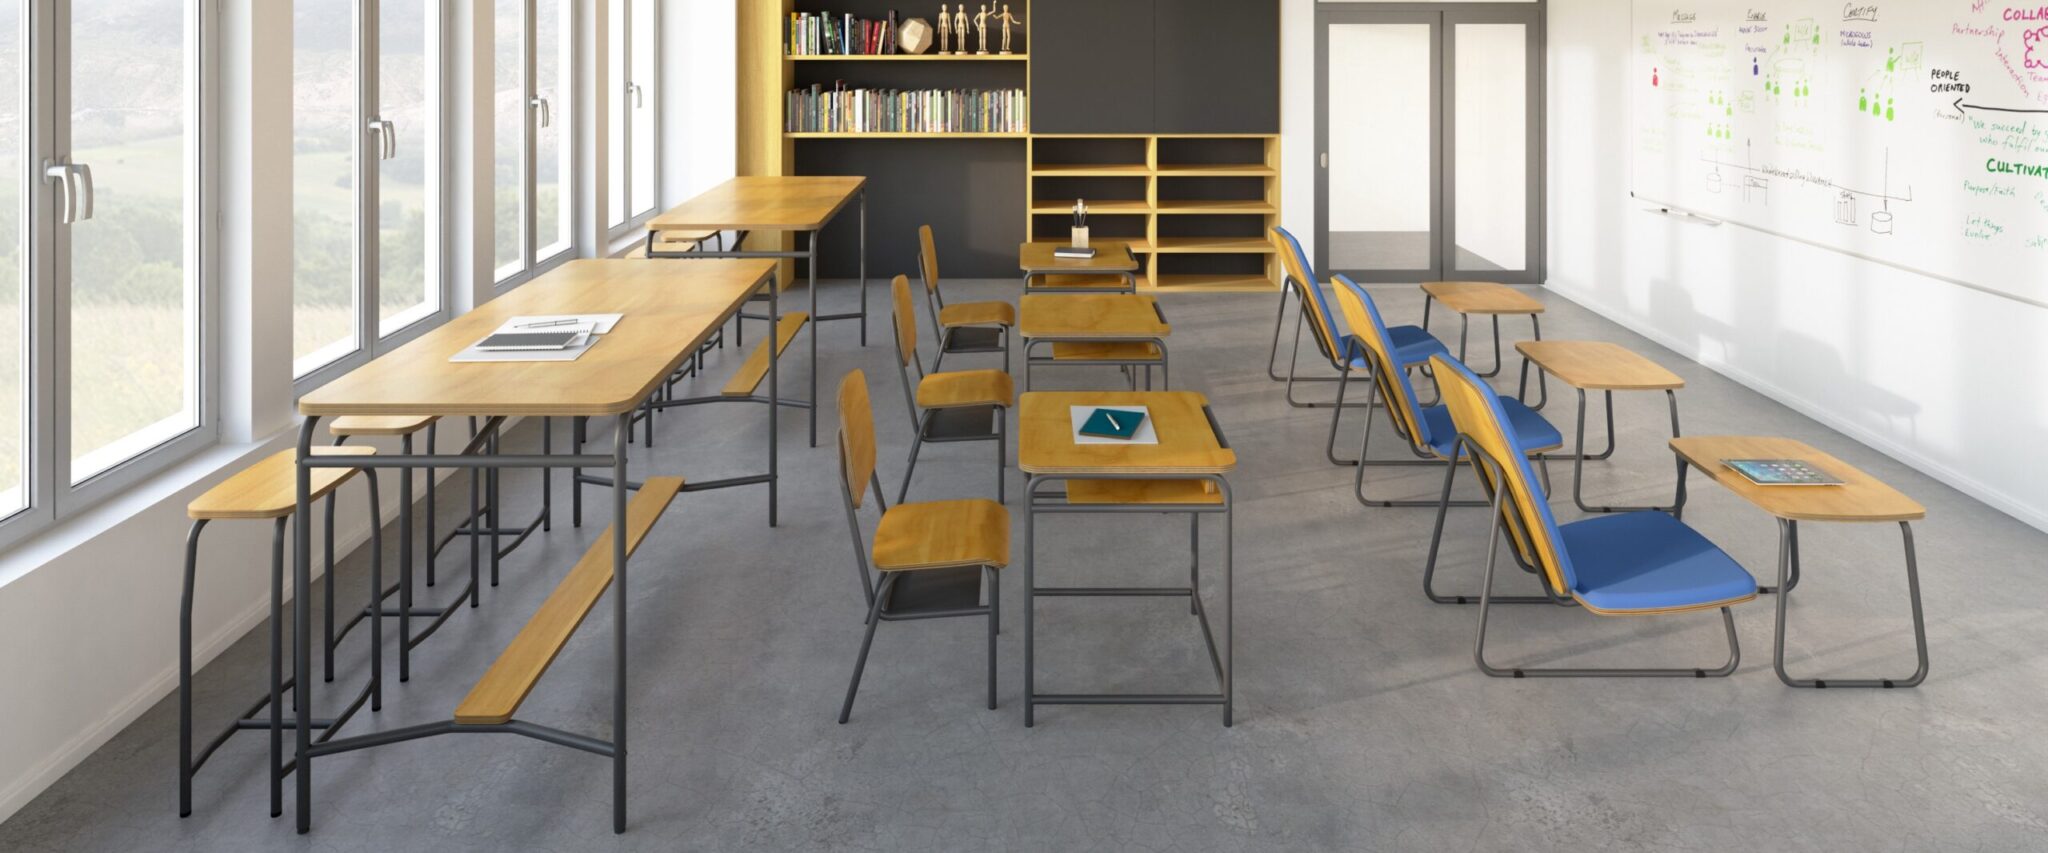 sala de aula com bancadas altas e banquetas no fundo, conjuntos de mesas e cadeiras no centro, e poltronas com mesas de apoio na frente, moveis de armazenagem ao lado